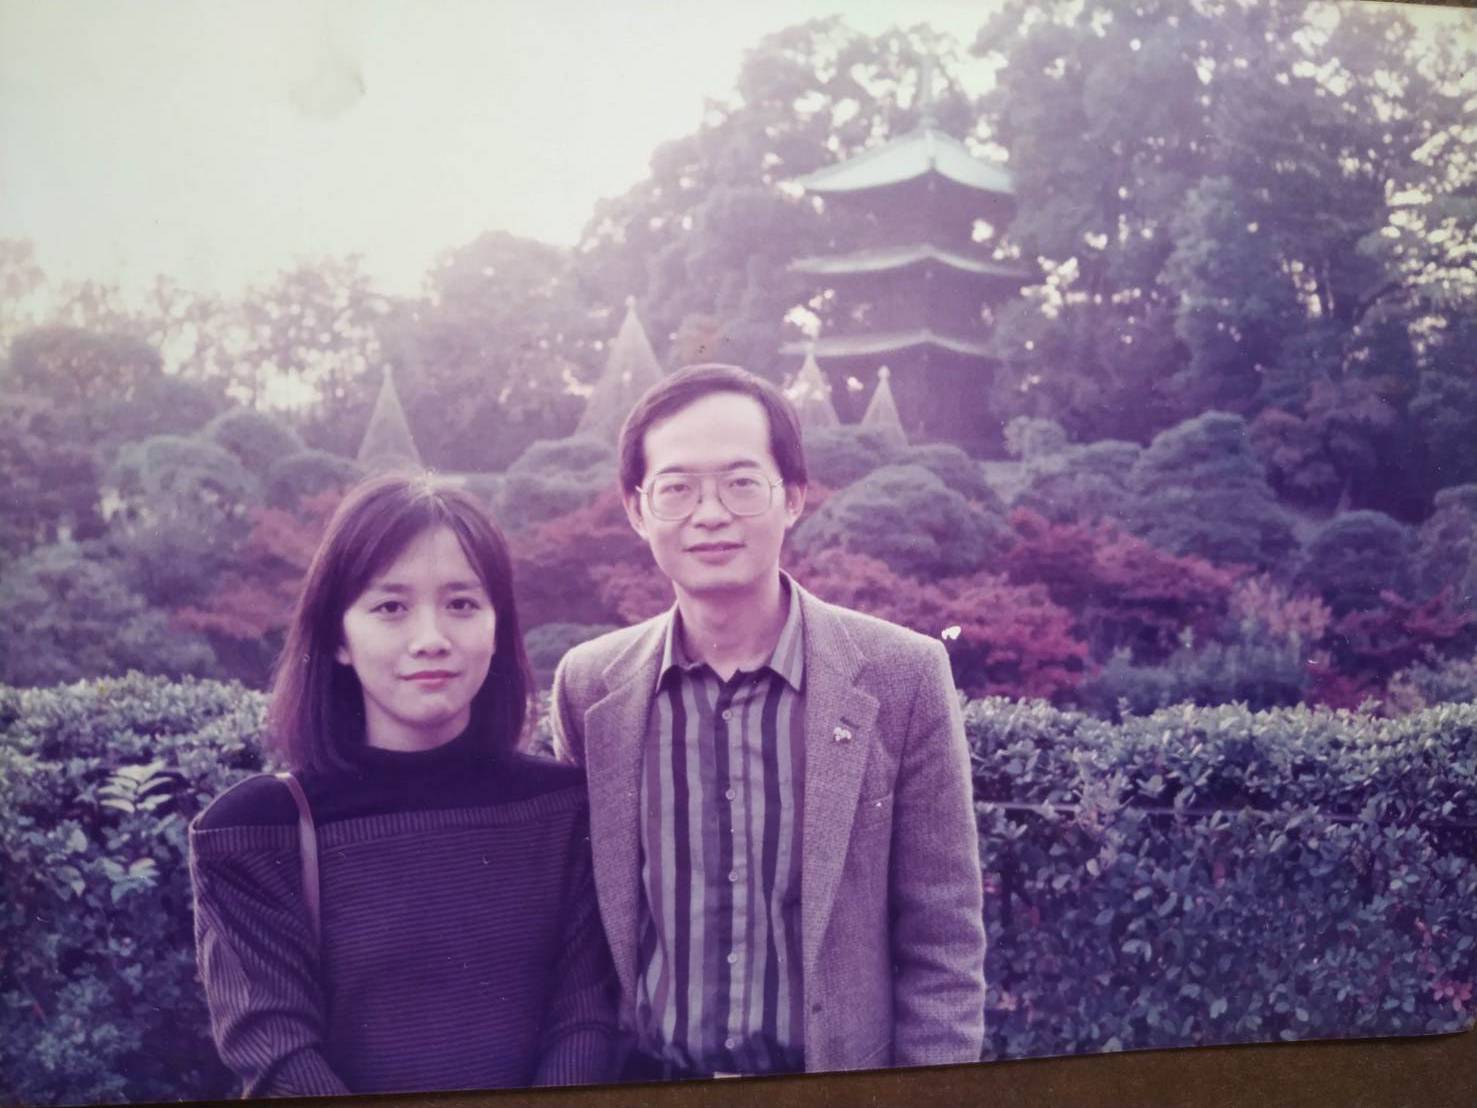 曾欽平 with his wife